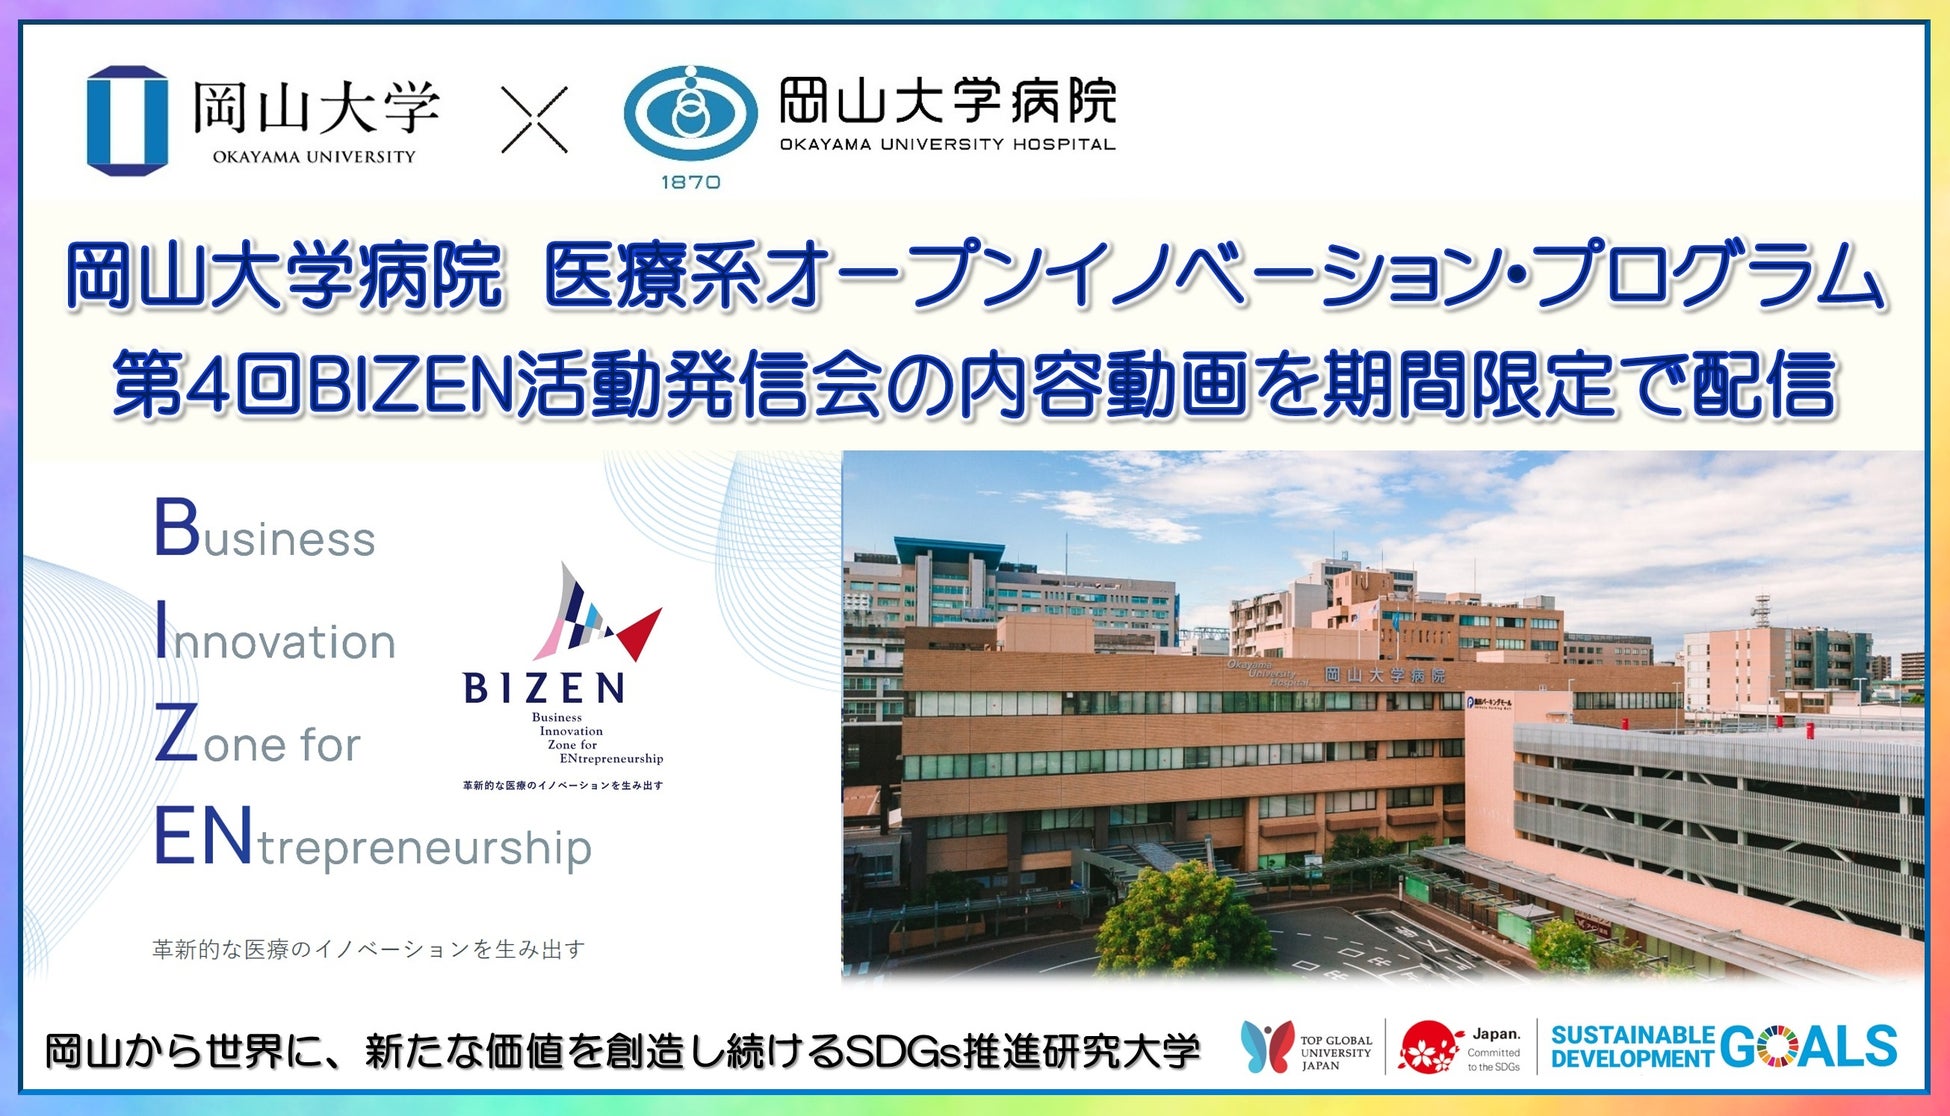 【岡山大学】岡山大学病院 医療系オープンイノベーション・プログラム「第4回BIZEN活動発信会」の内容動画を期間限定で公開